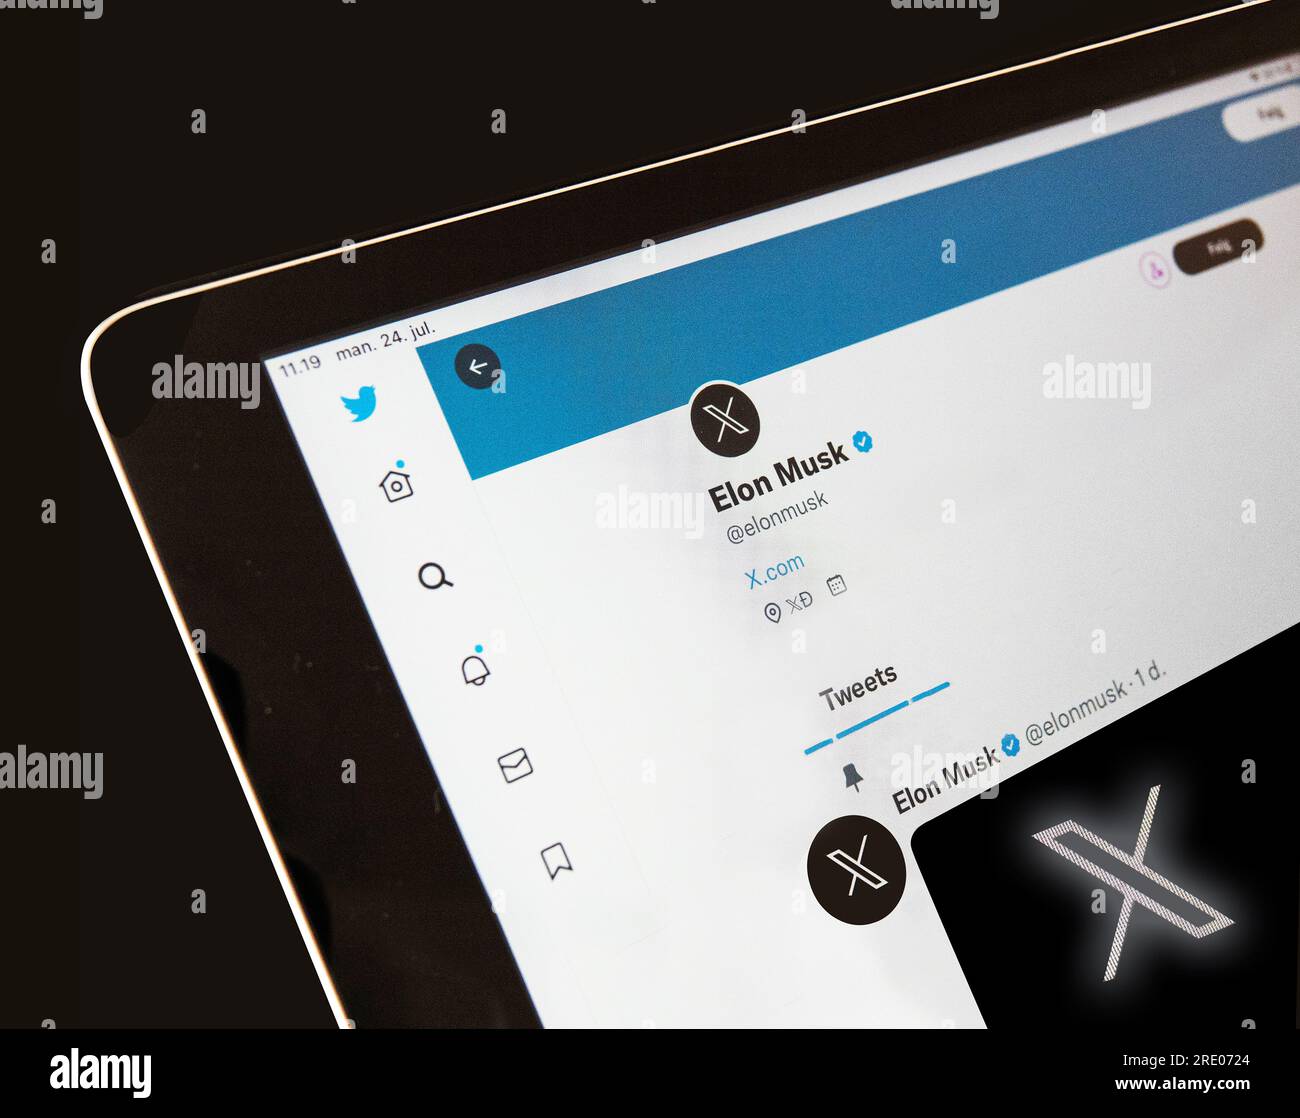 Twitter peut être renommé X - écran du profil twitter Elon Musk montrant le nouveau logotype. Copenhague, Danemark - 24 juillet 2023. Banque D'Images